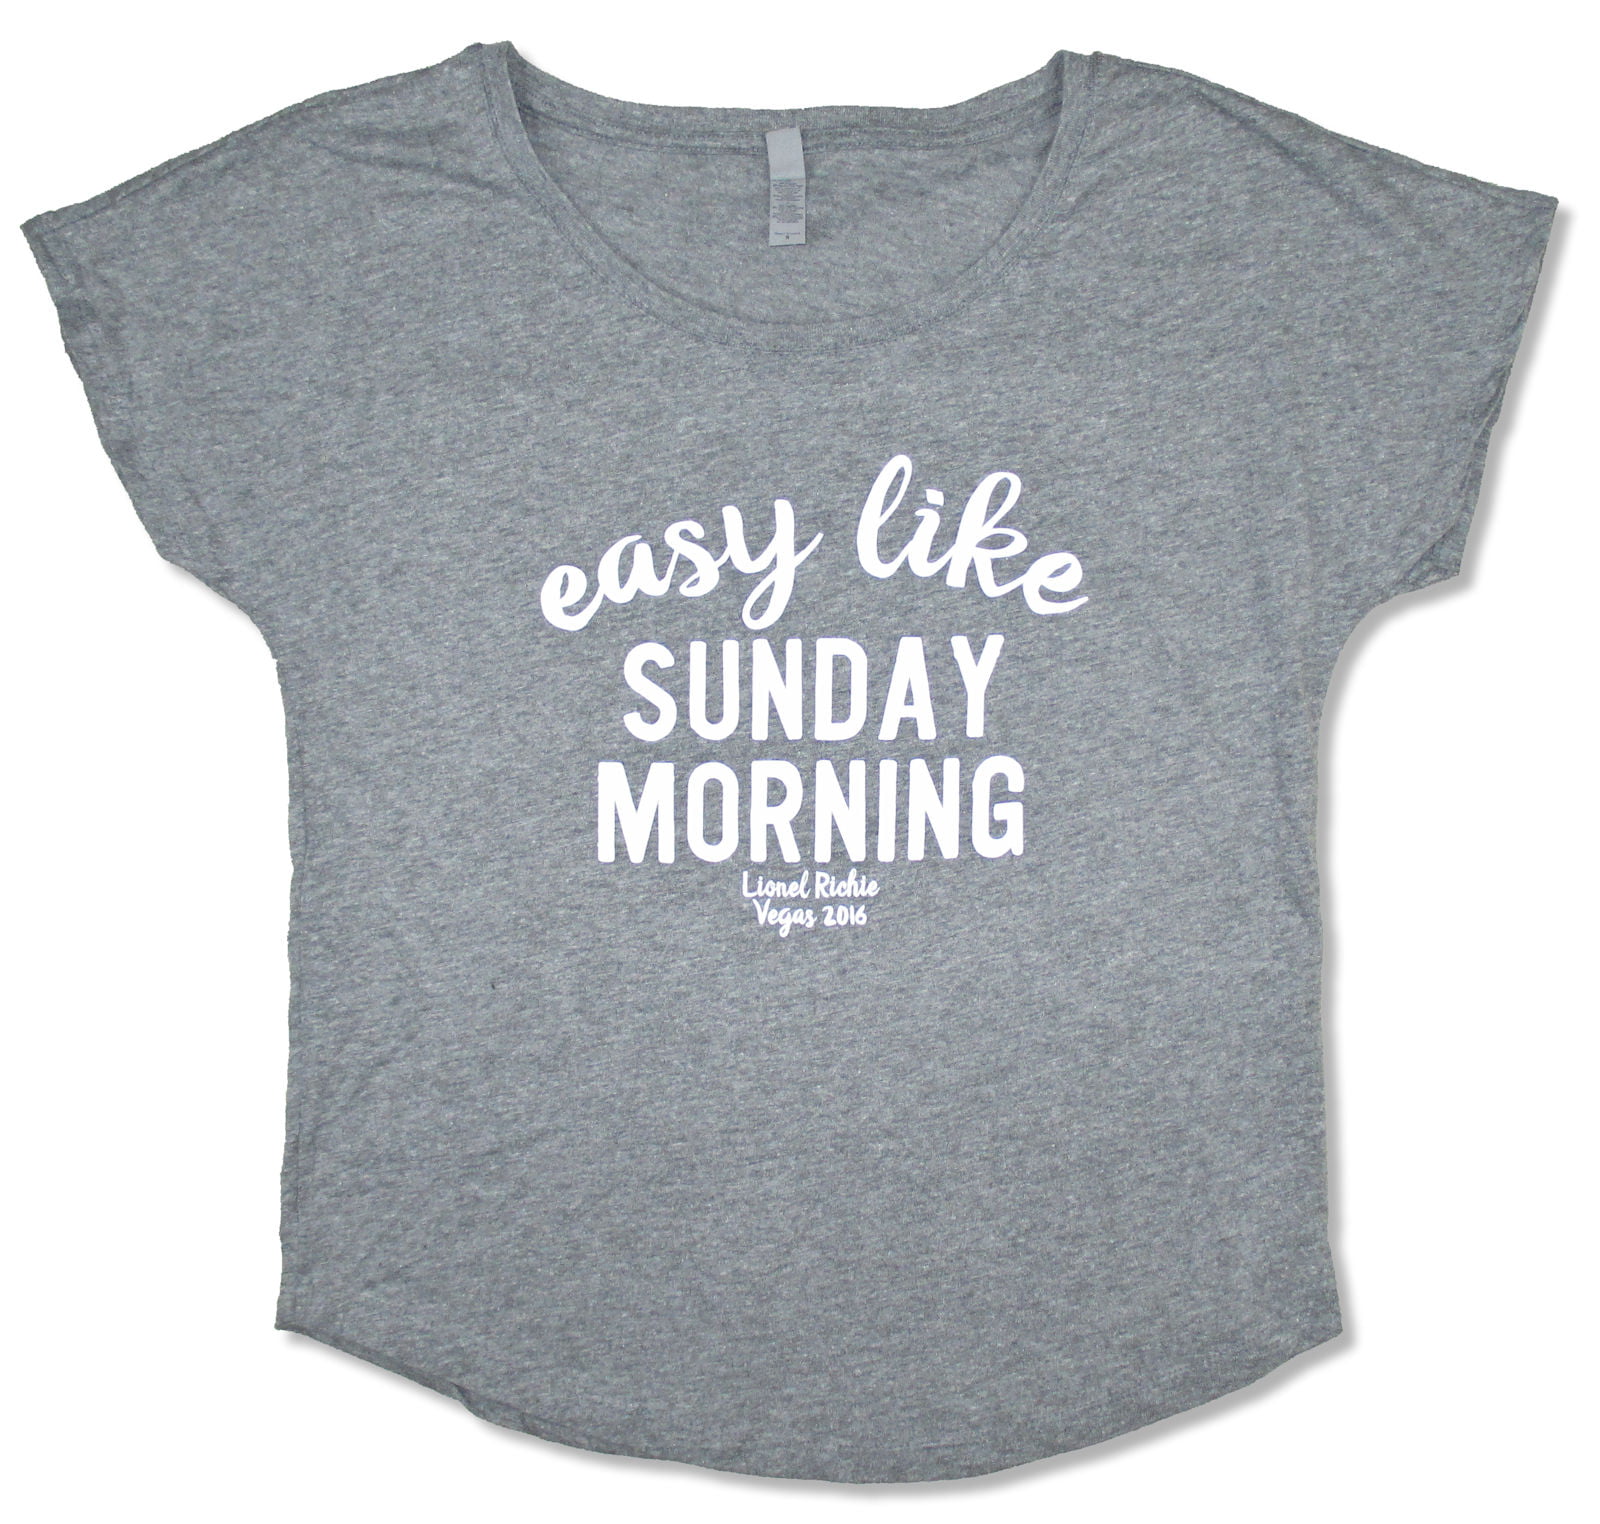 Easy like go. Easy like Sunday morning. Easy like Sunday morning футболка. Sunday morning одежда. Easy like Sunday morning одежда.